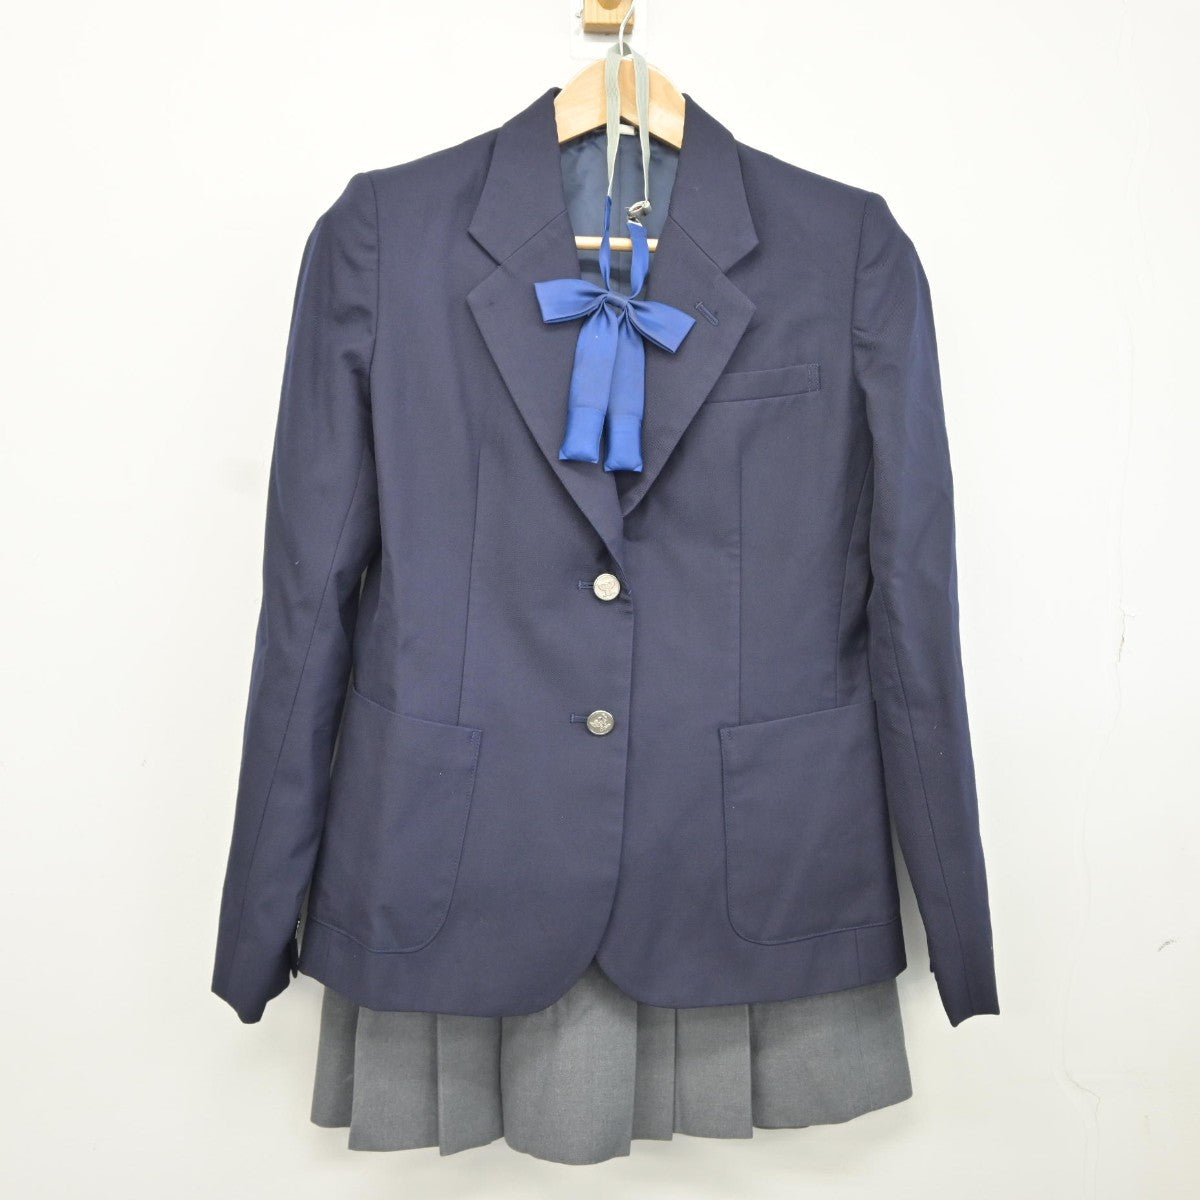 NEW在庫福岡県 有明工業高等専門学校 女子制服 3点 sf009424 学生服